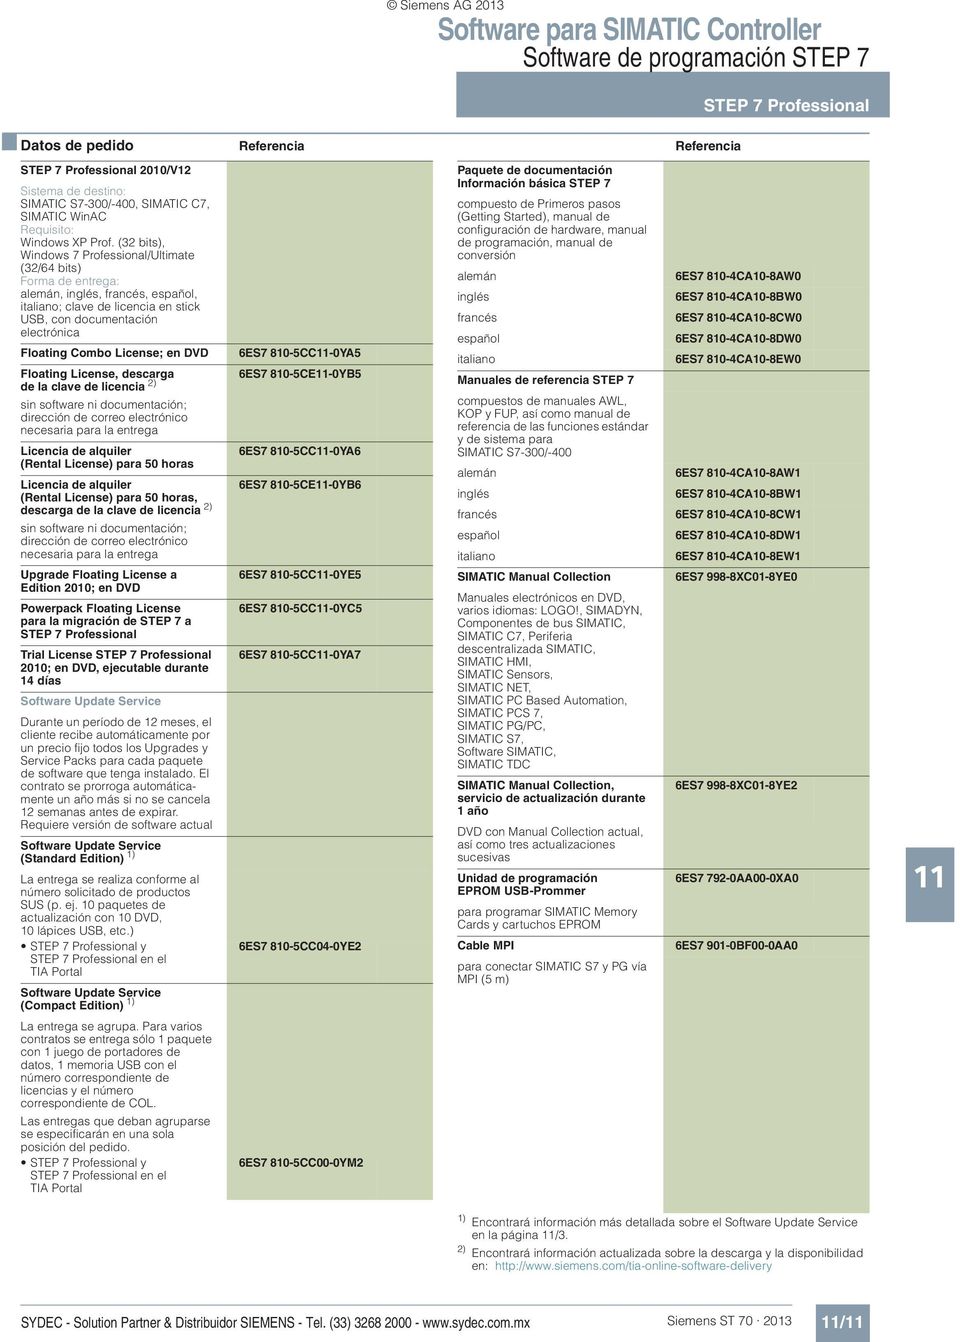 (32 bits), Windows 7 Professional/Ultimate (32/64 bits) alemán, inglés, francés, español, italiano; clave de licencia en stick USB, con documentación electrónica Floating Combo License; en DVD